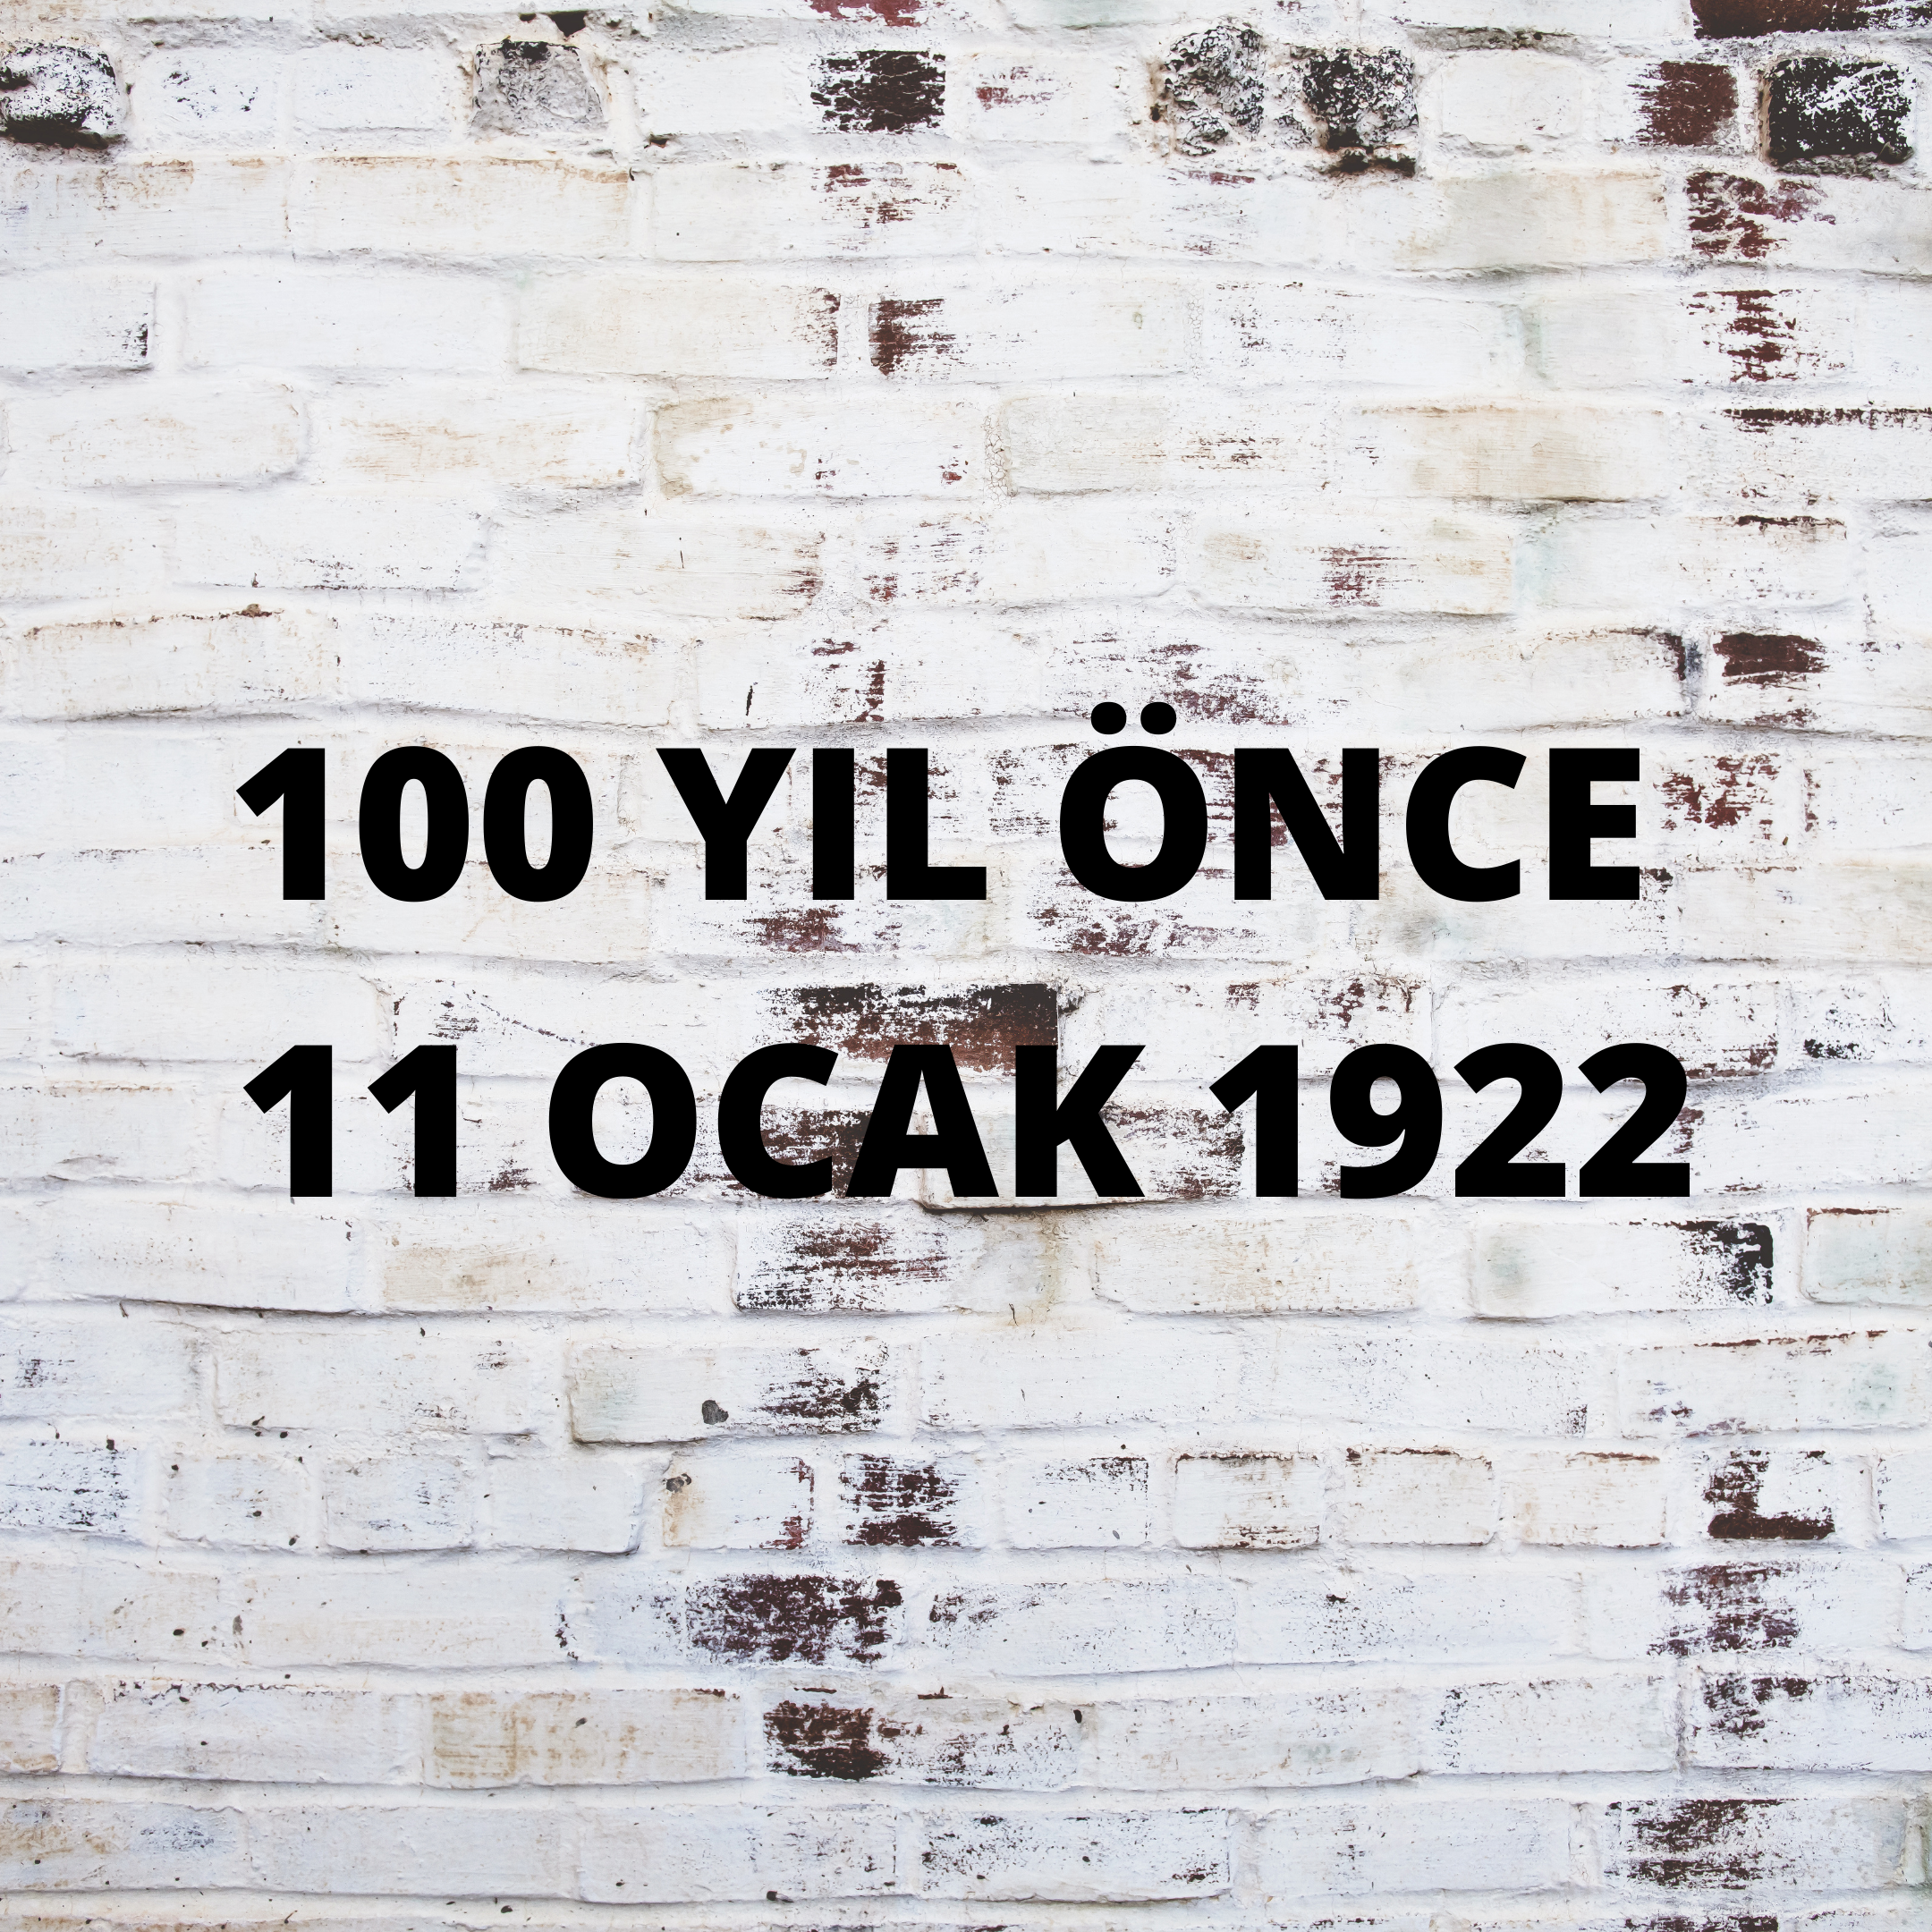 100 YIL ÖNCE 11 OCAK 1922